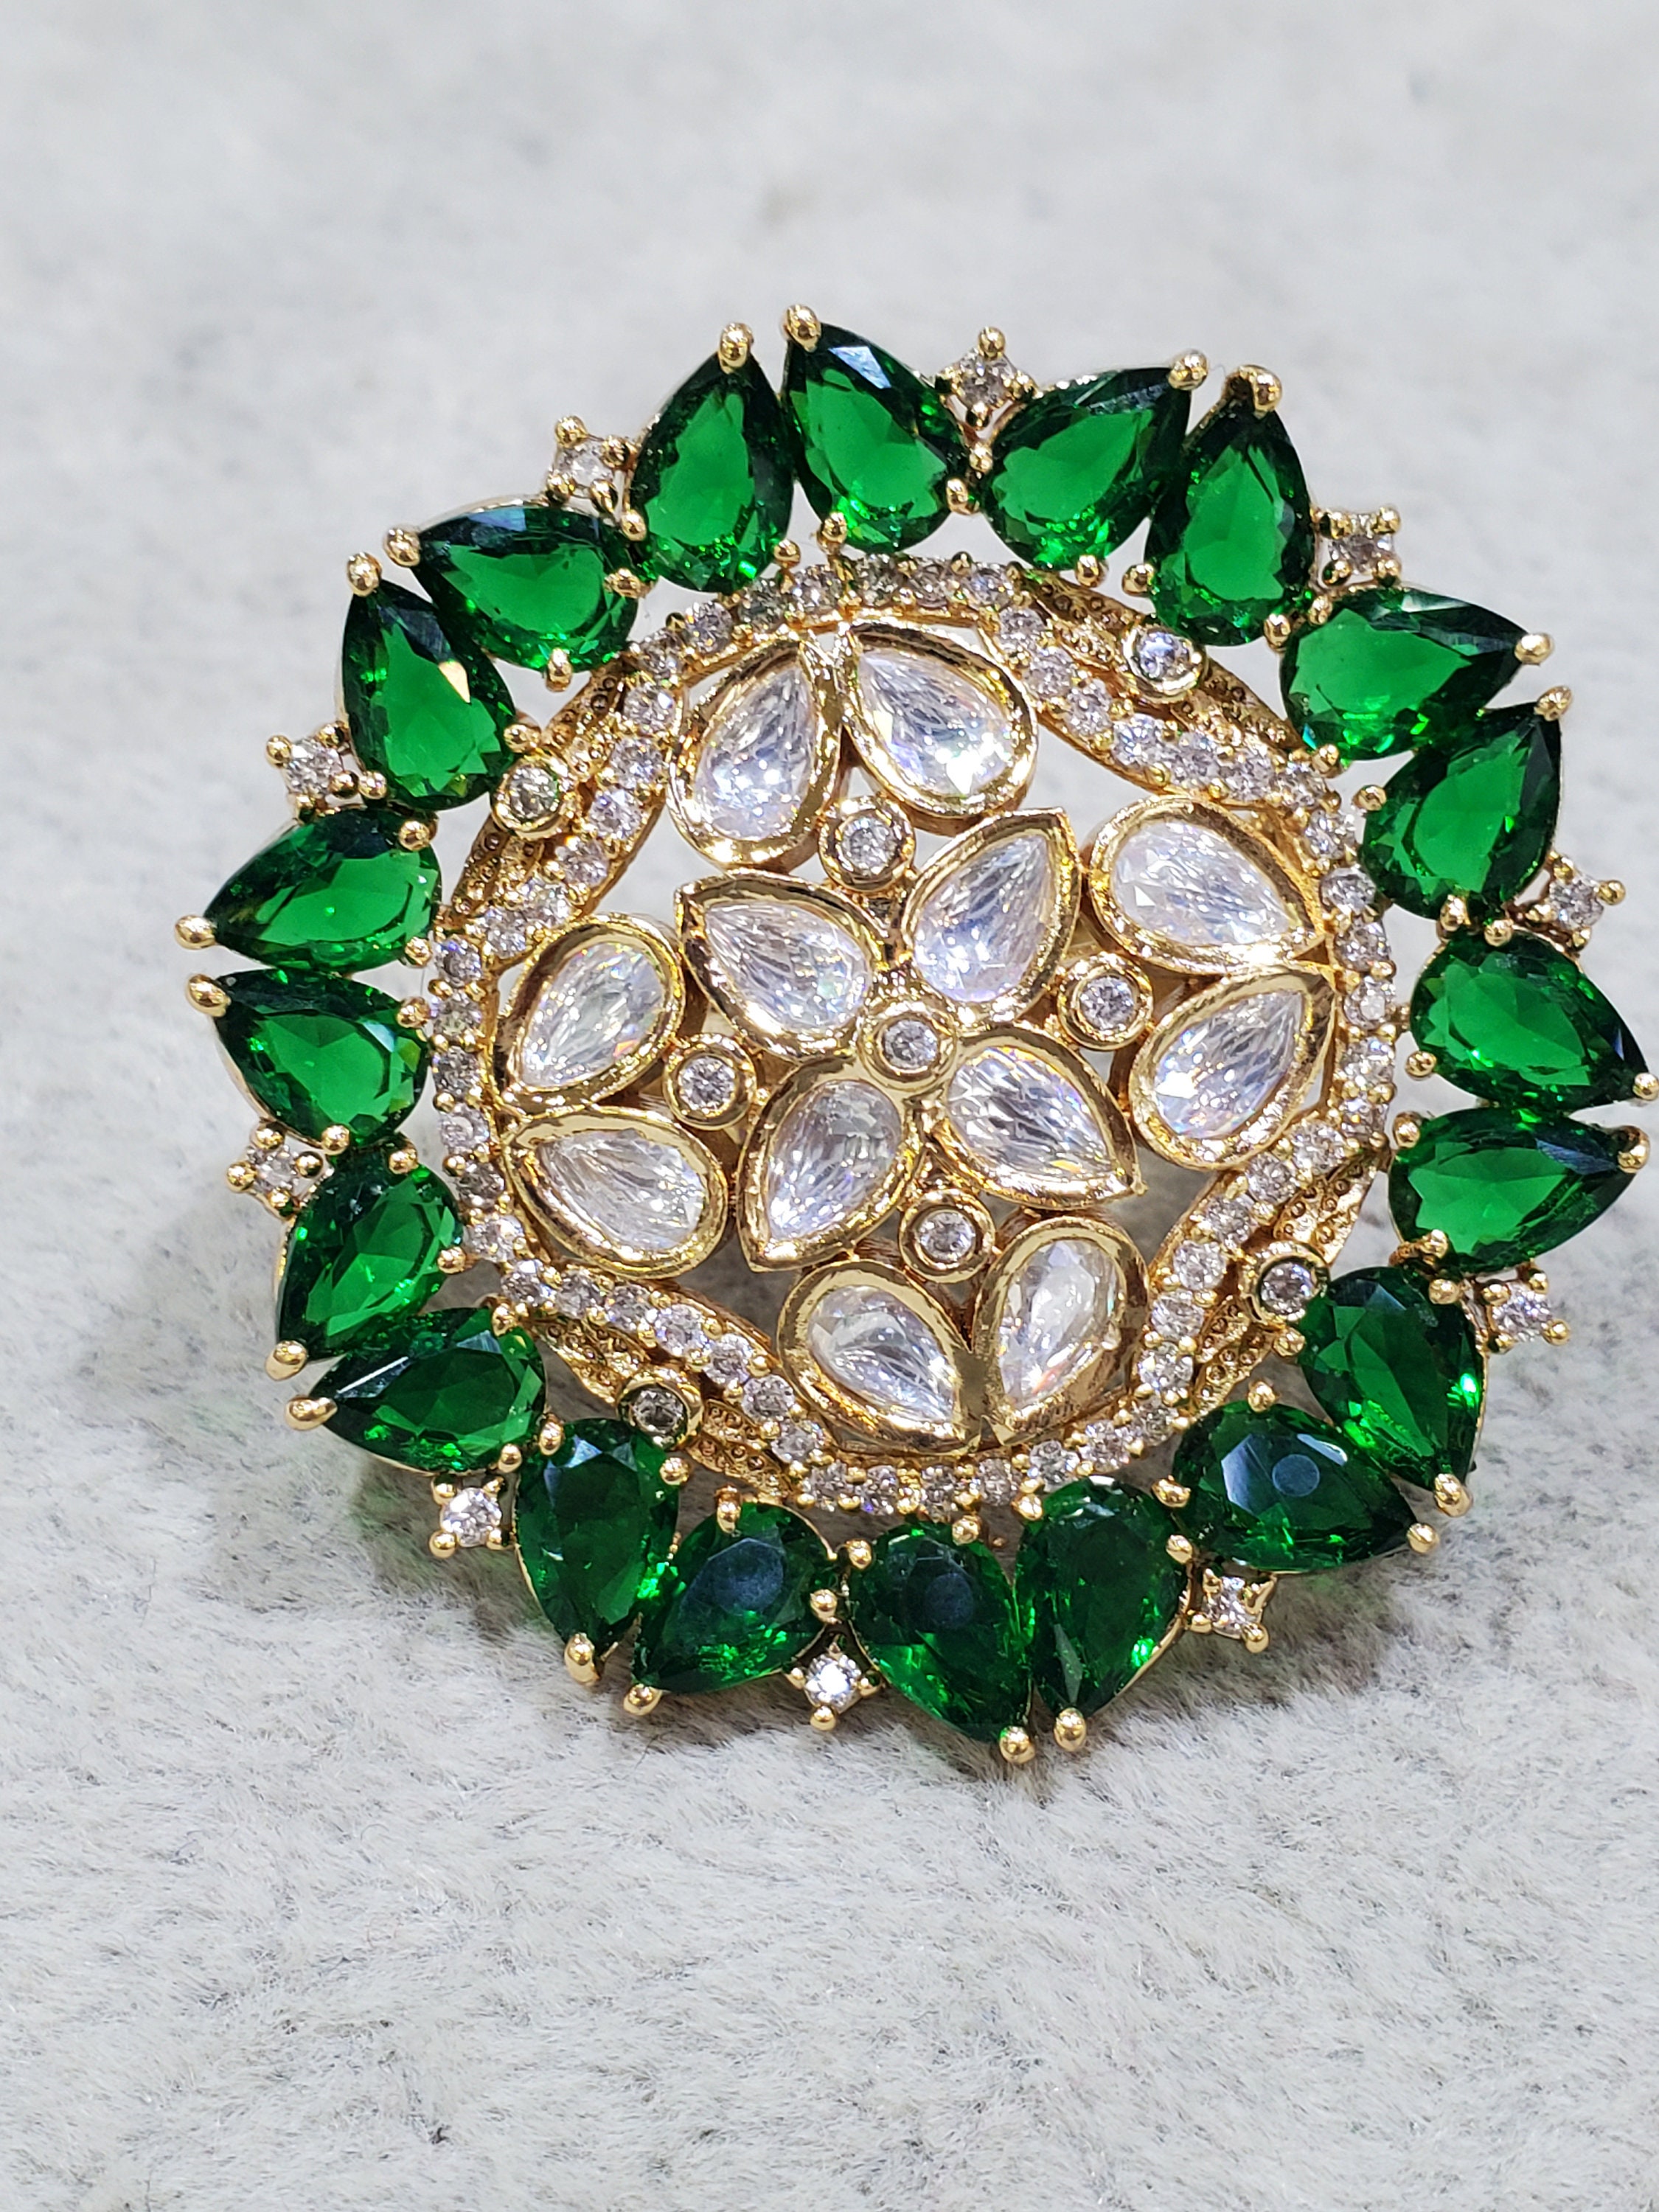 Buy Sabyasachi Kundan Ring, Indian Jewelry Ring, Gold Kundan Bridal Ring,  Polki Ring Sabyasachi Jewelry,kundan Rings,polki Rings,kundan Jewelry  Online in India - Etsy